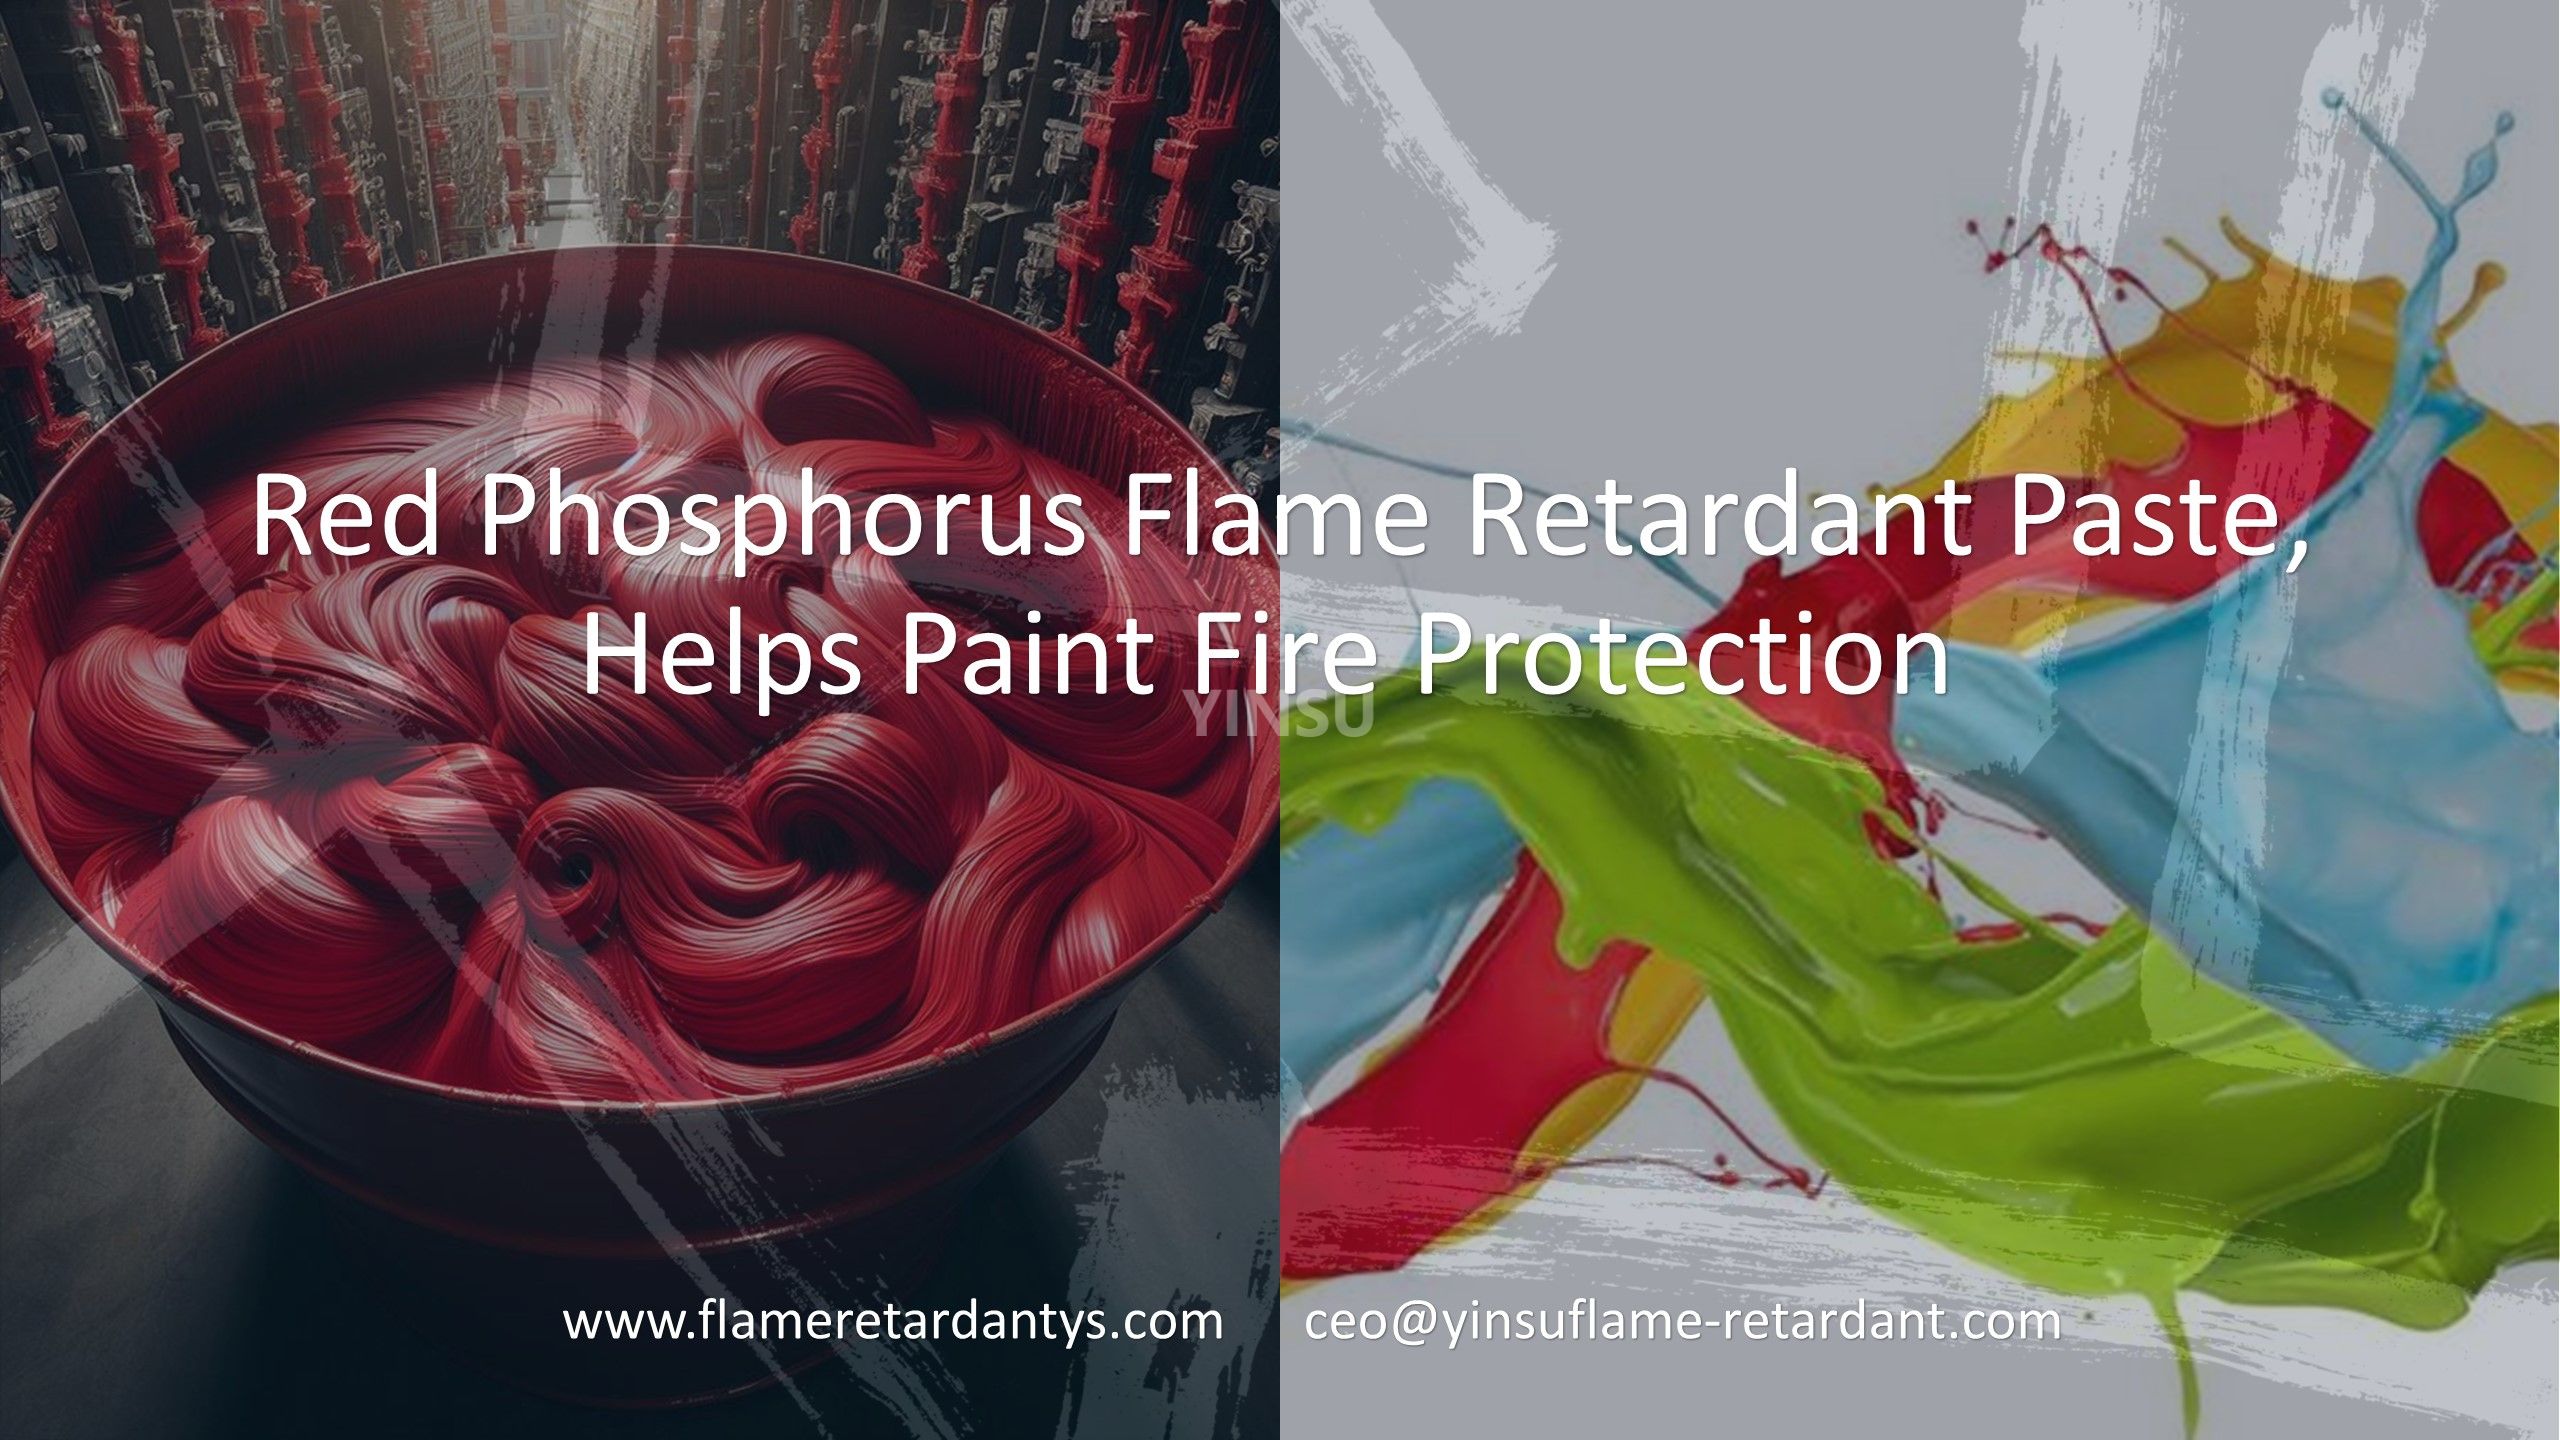 Огнезащитная паста с красным фосфором обеспечивает огнезащиту краски